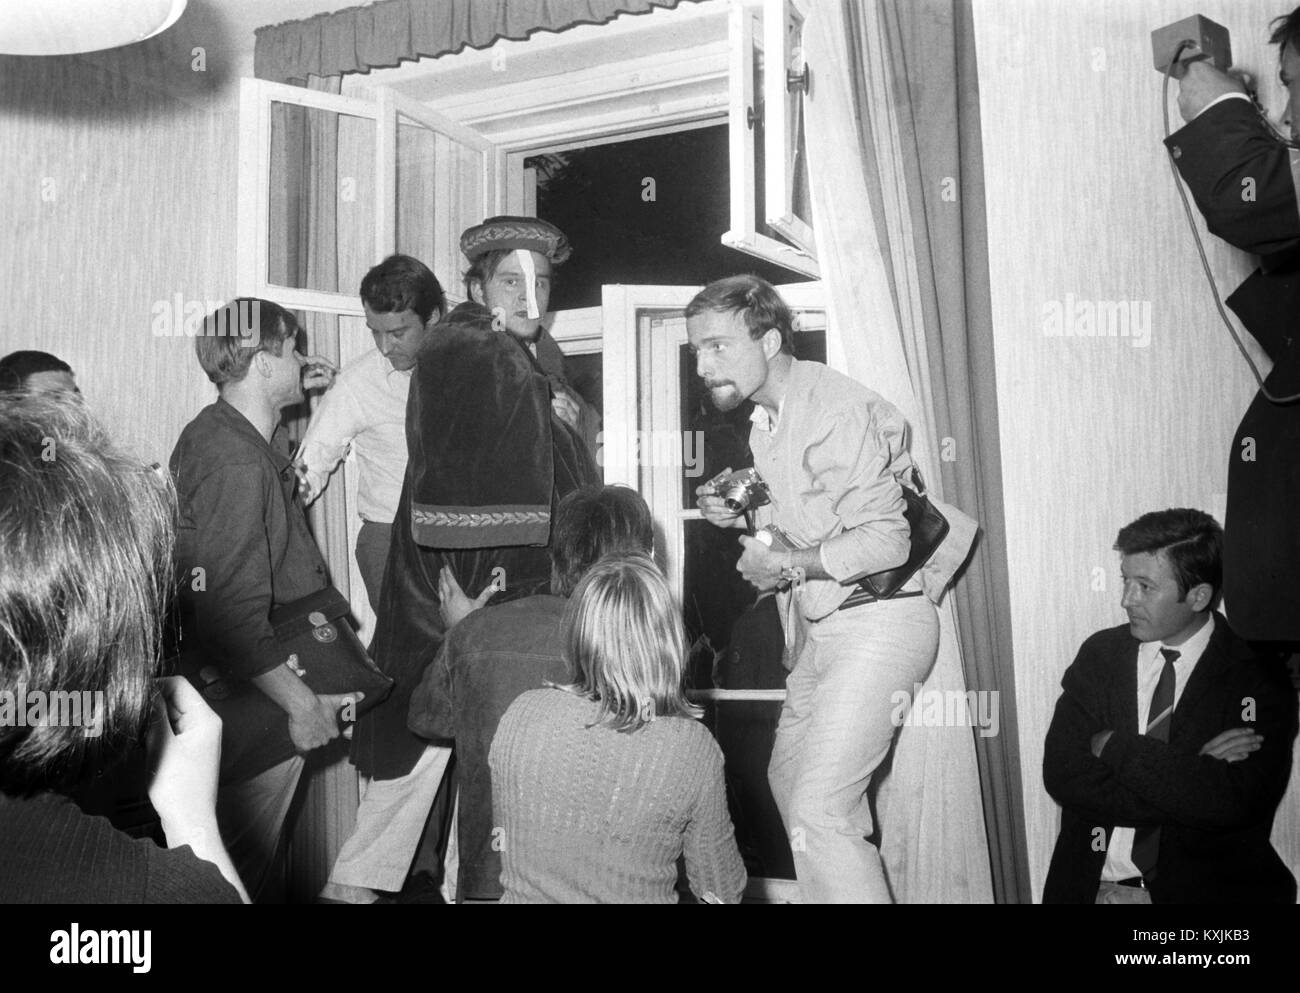 Ein Student hat auf der Rektor Kleid, während die Besetzung des Rektorats der FU Berlin am 27. Juni 1968. Studenten verlangte für eine offene Diskussion für Rektor Prof. Dr. Ewald Harndt, der sich weigerte. | Verwendung weltweit Stockfoto